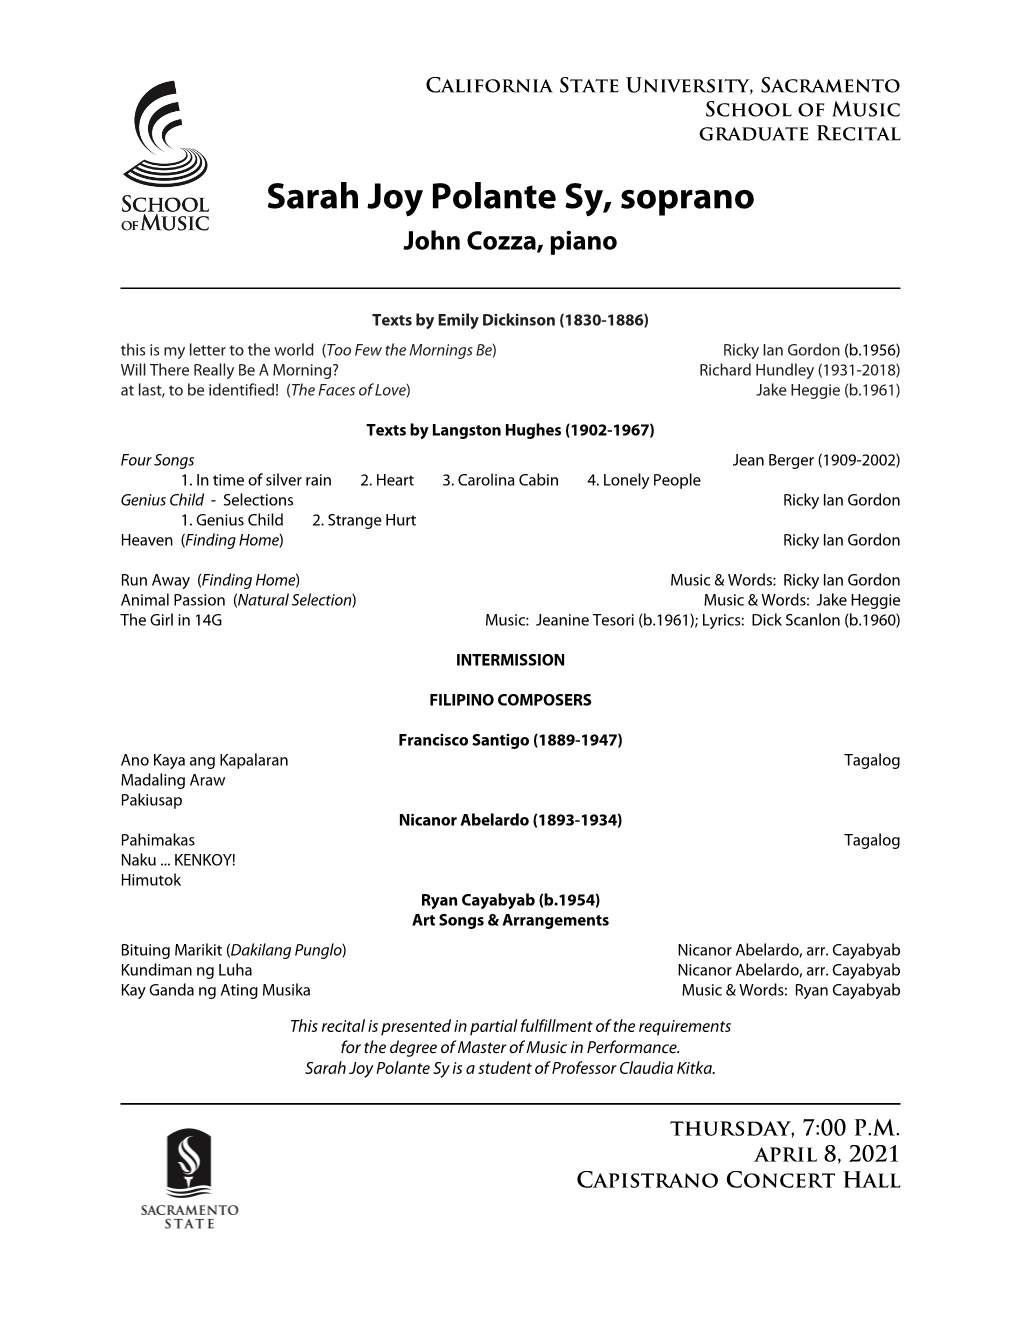 Sarah Joy Polante Sy, Soprano John Cozza, Piano